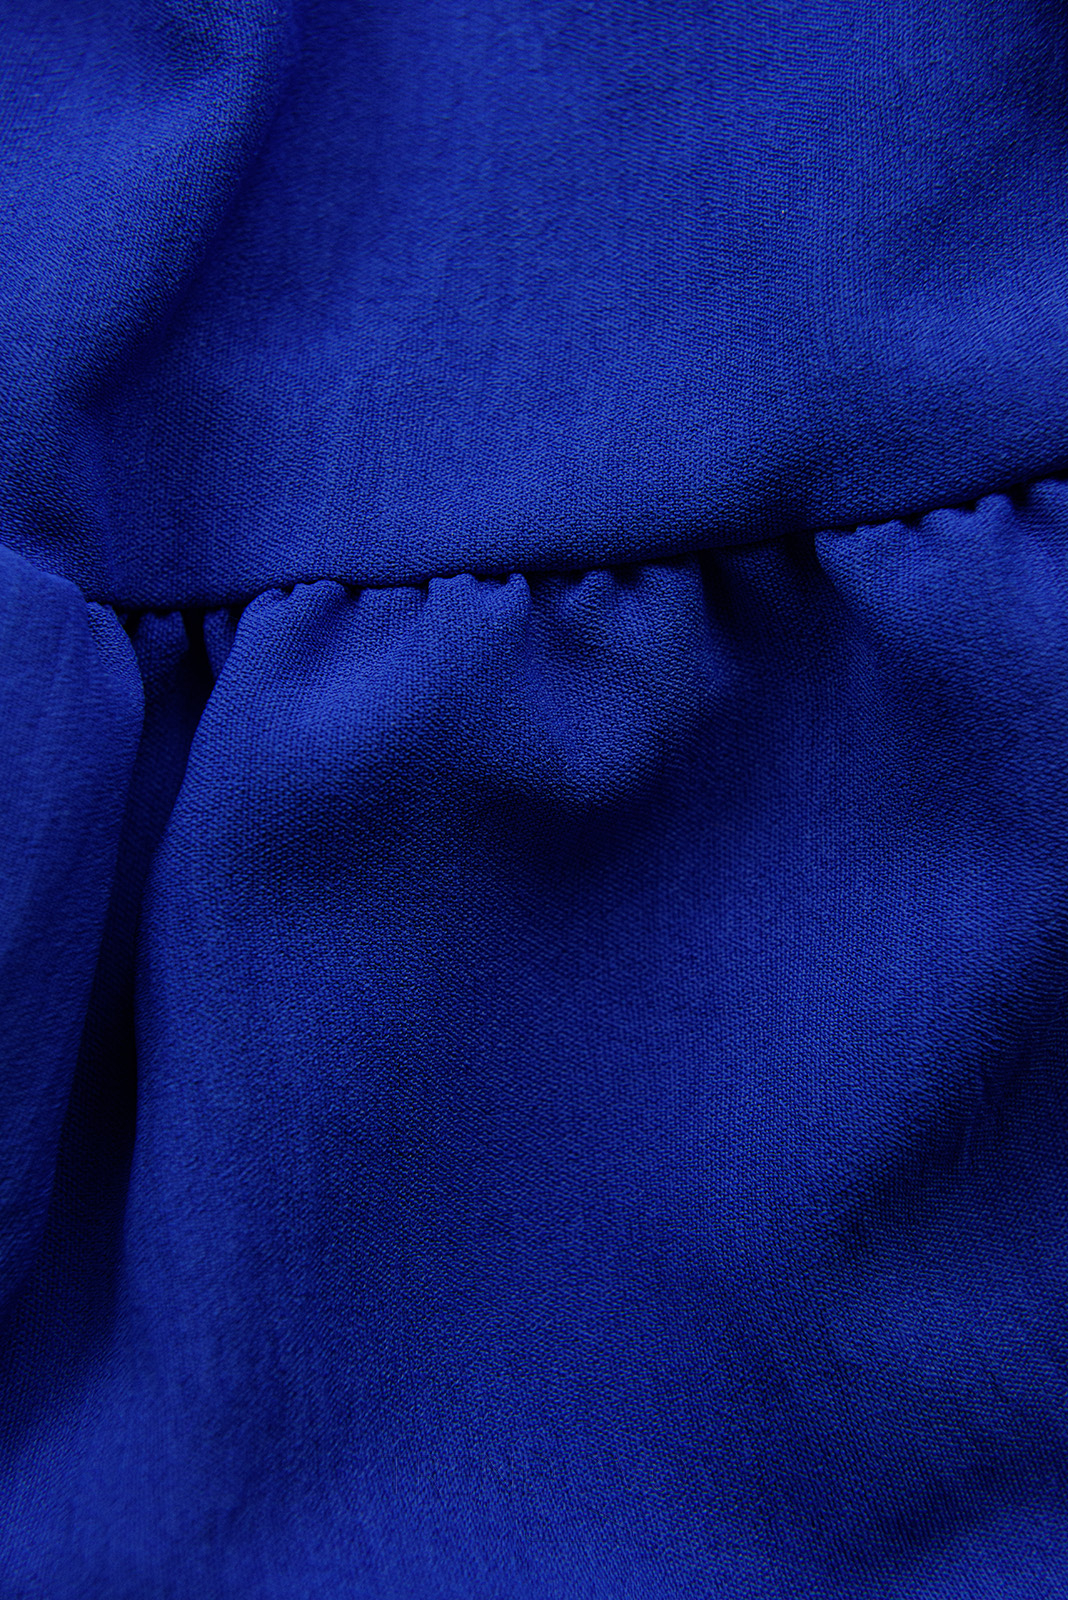 Kobaltově modré midi letní šaty s páskem